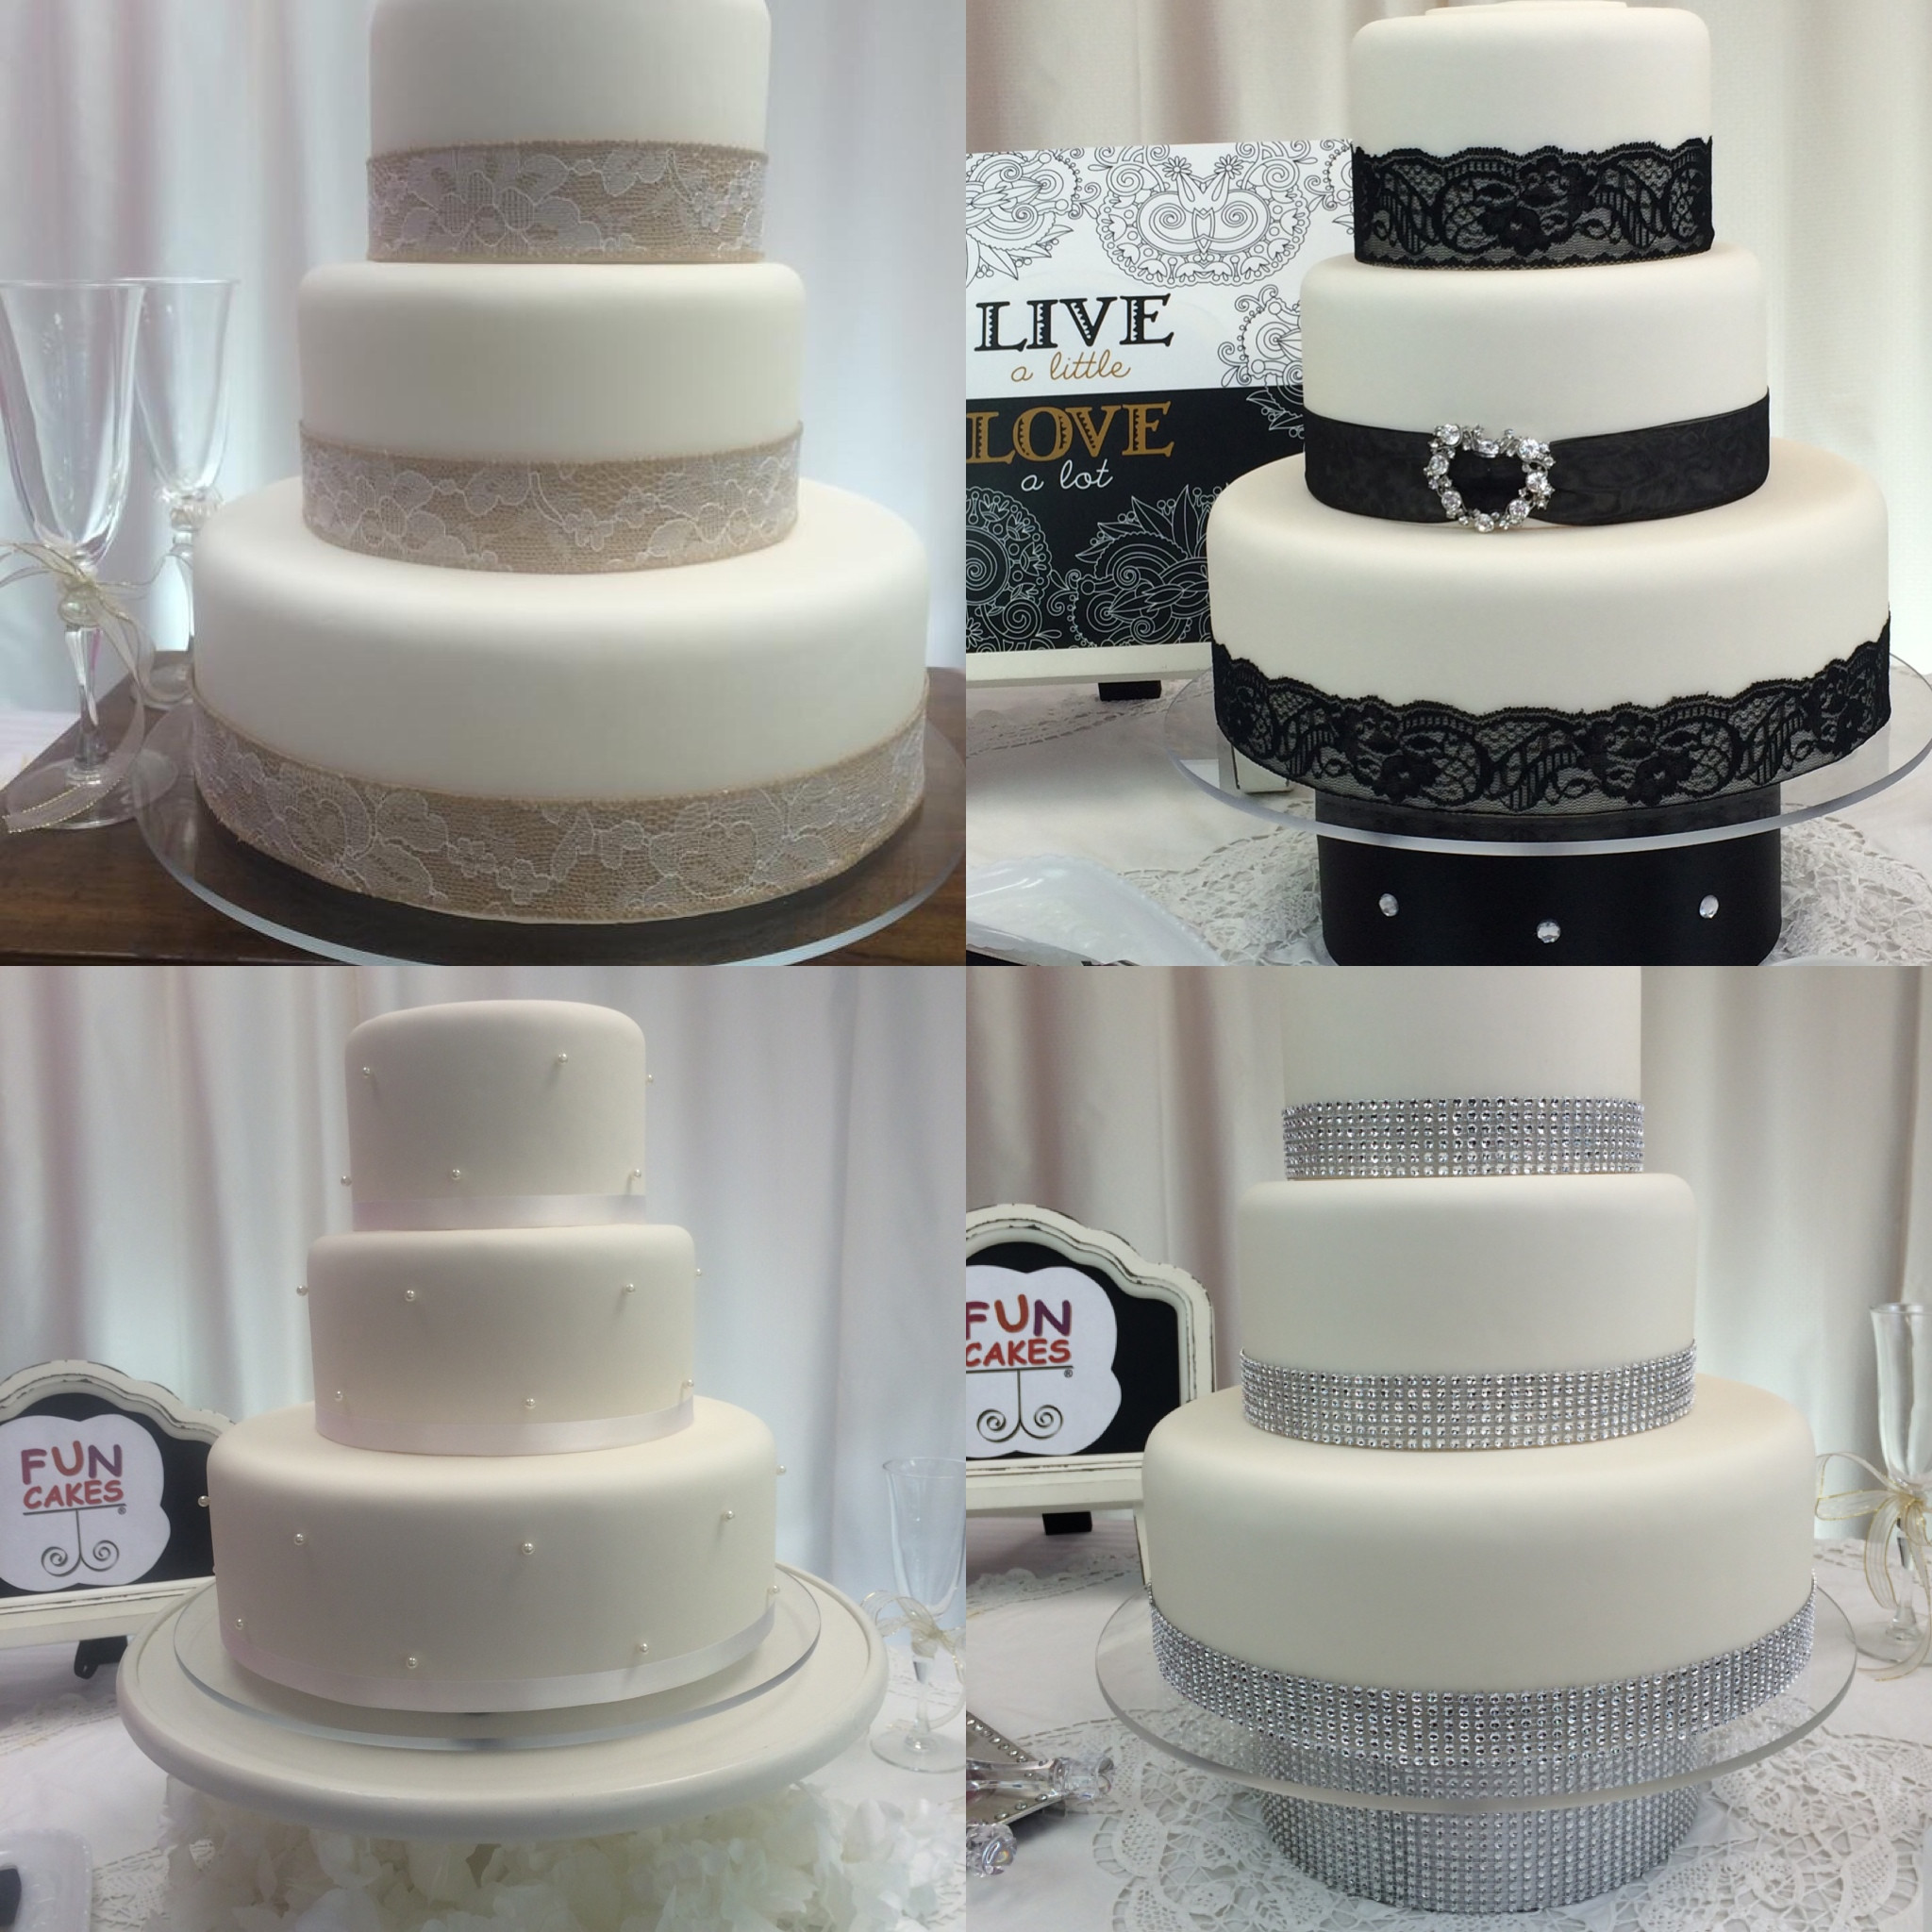 Four cake designs